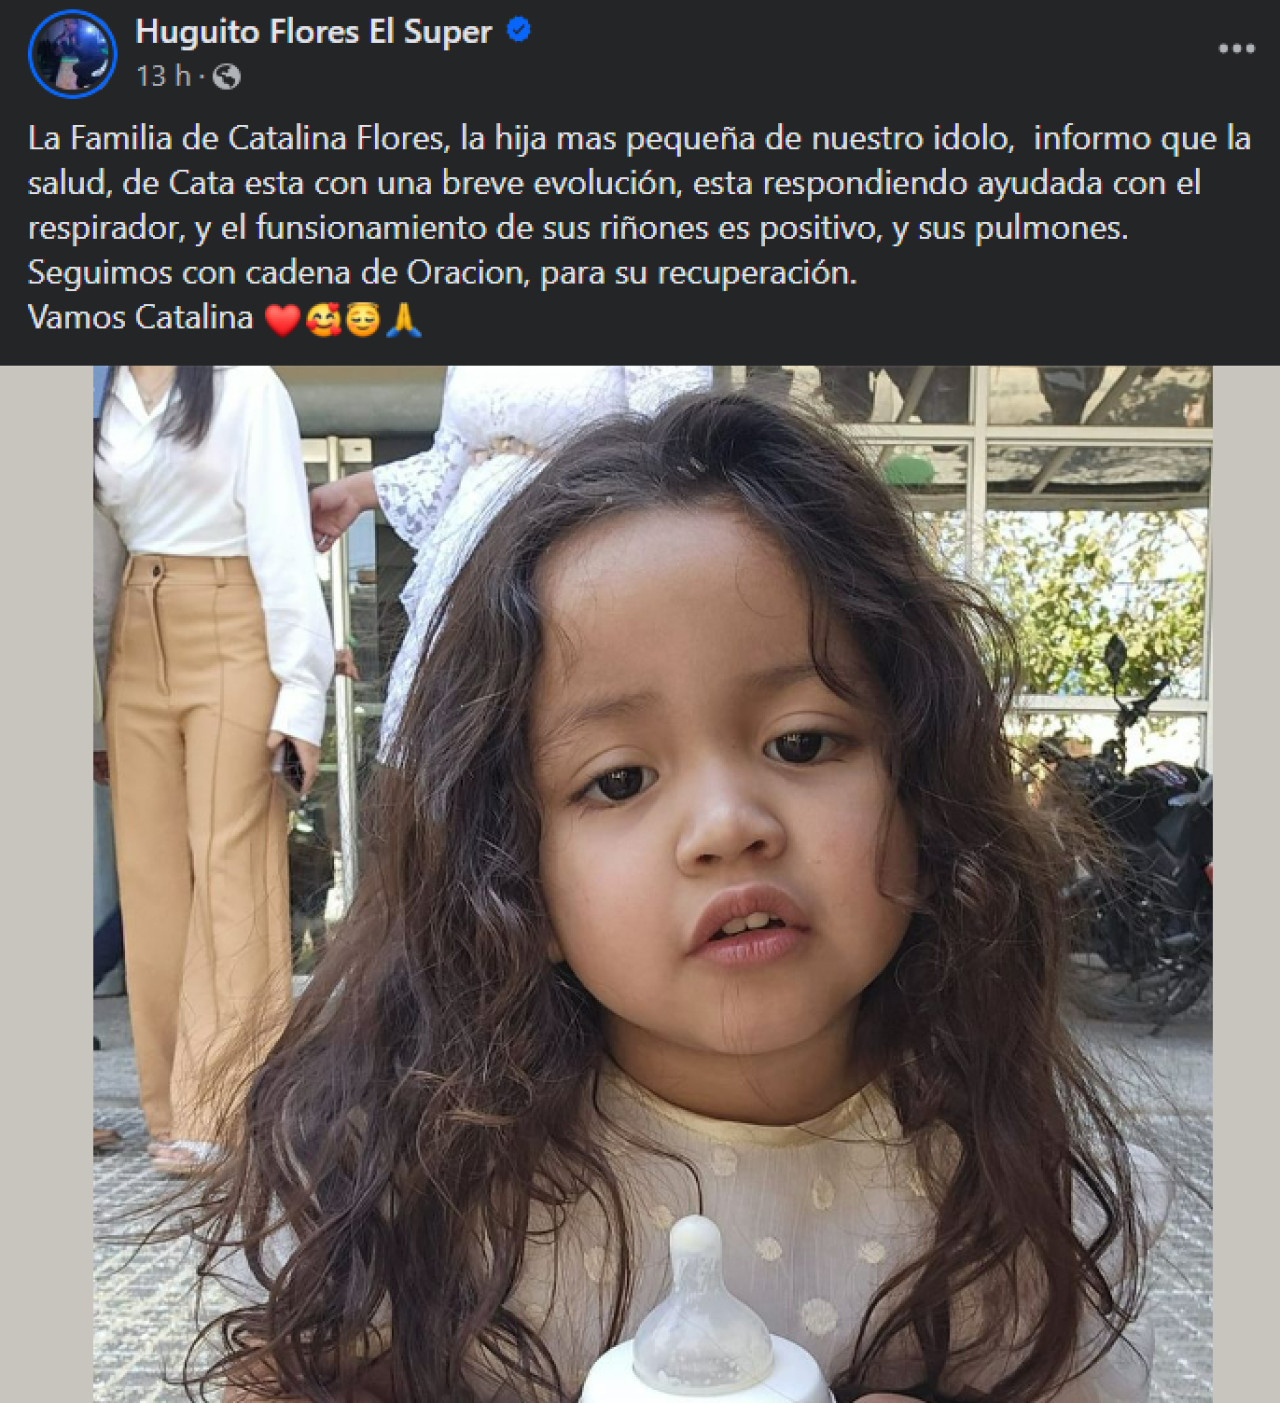 Información sobre la salud de la hija de Huguito Flores. Foto: Facebook Huguito Flores El Super.